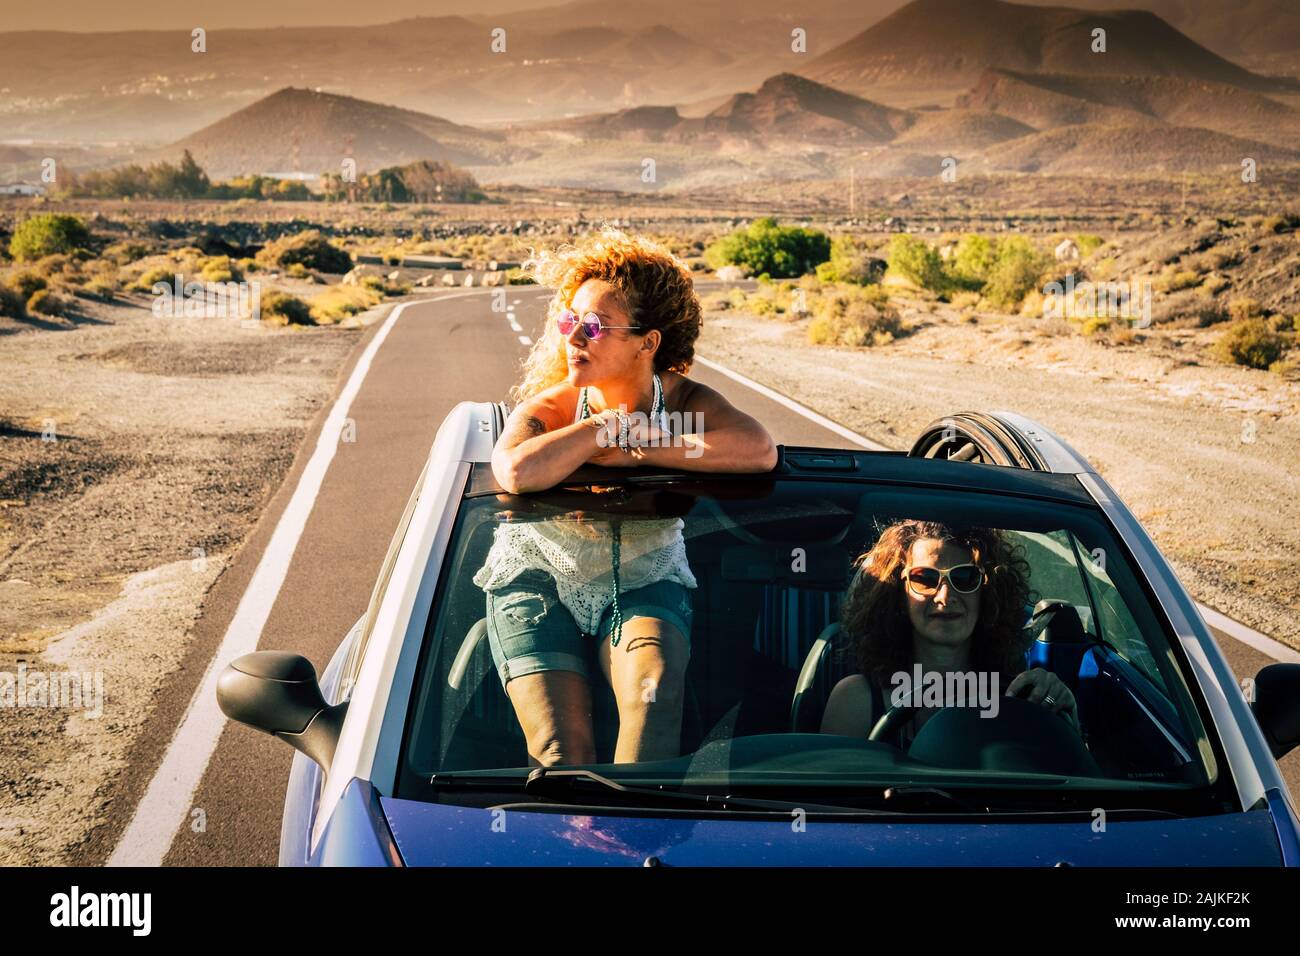 Couple d'amis femmes adultes voyageant ensemble gratuitement et indépendant sur une voiture avec mountsins convertivle et sauvage nature désert en fond - trave Banque D'Images